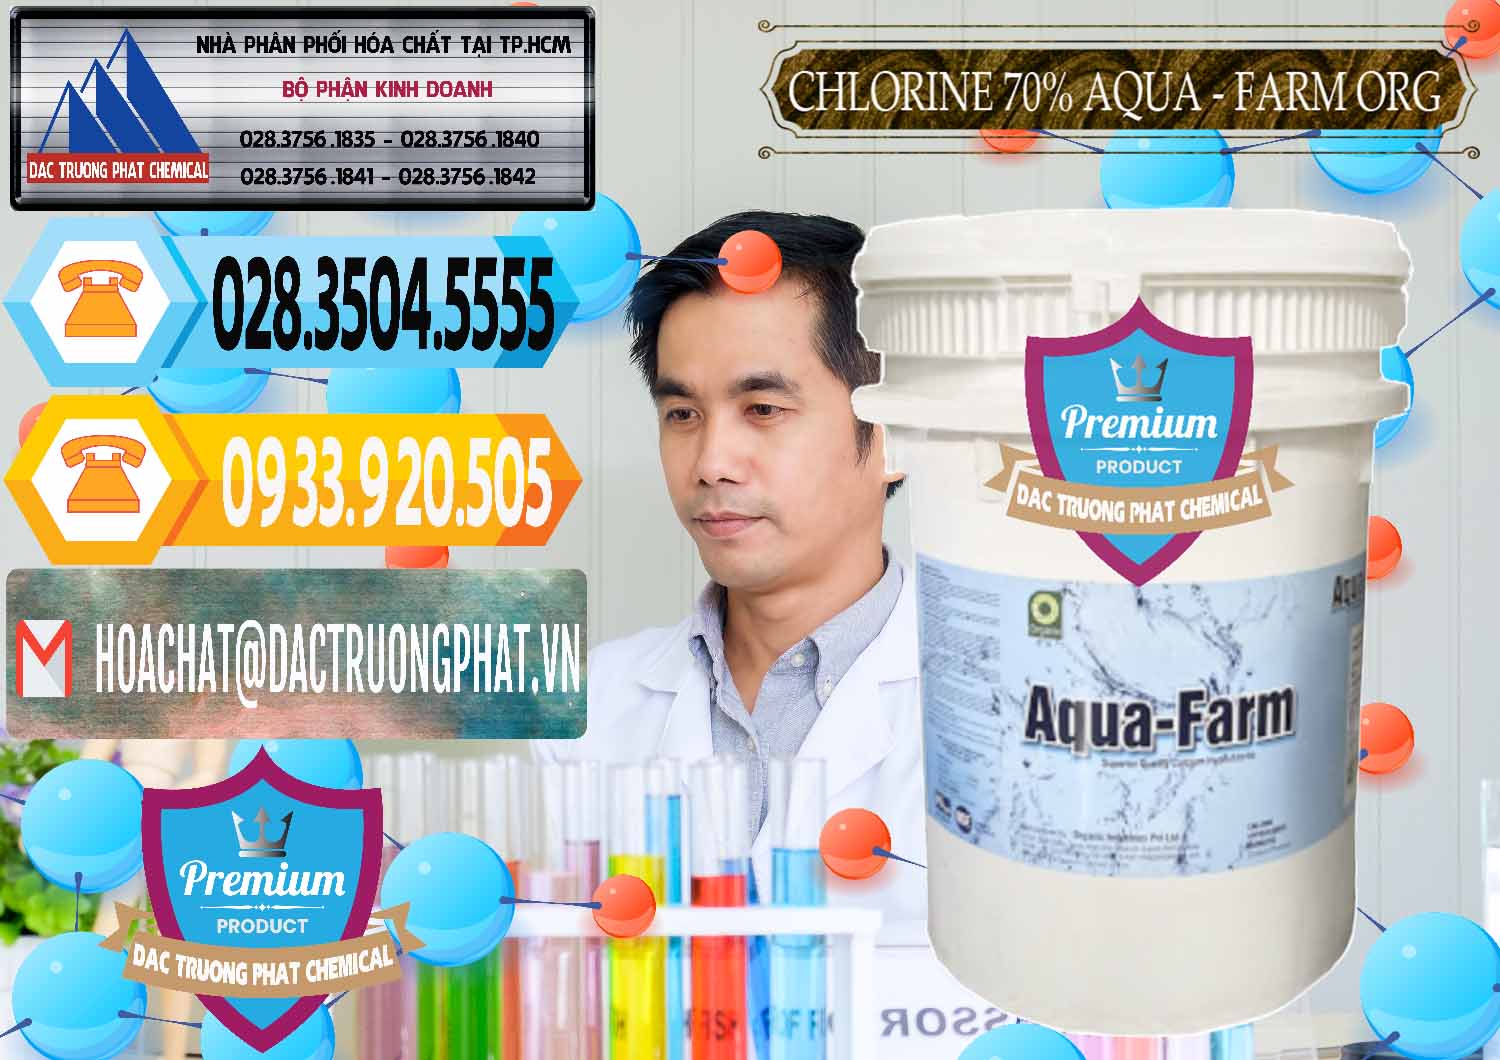 Cung cấp và bán Chlorine – Clorin 70% Aqua - Farm ORG Organic Ấn Độ India - 0246 - Đơn vị chuyên phân phối _ nhập khẩu hóa chất tại TP.HCM - hoachattayrua.net